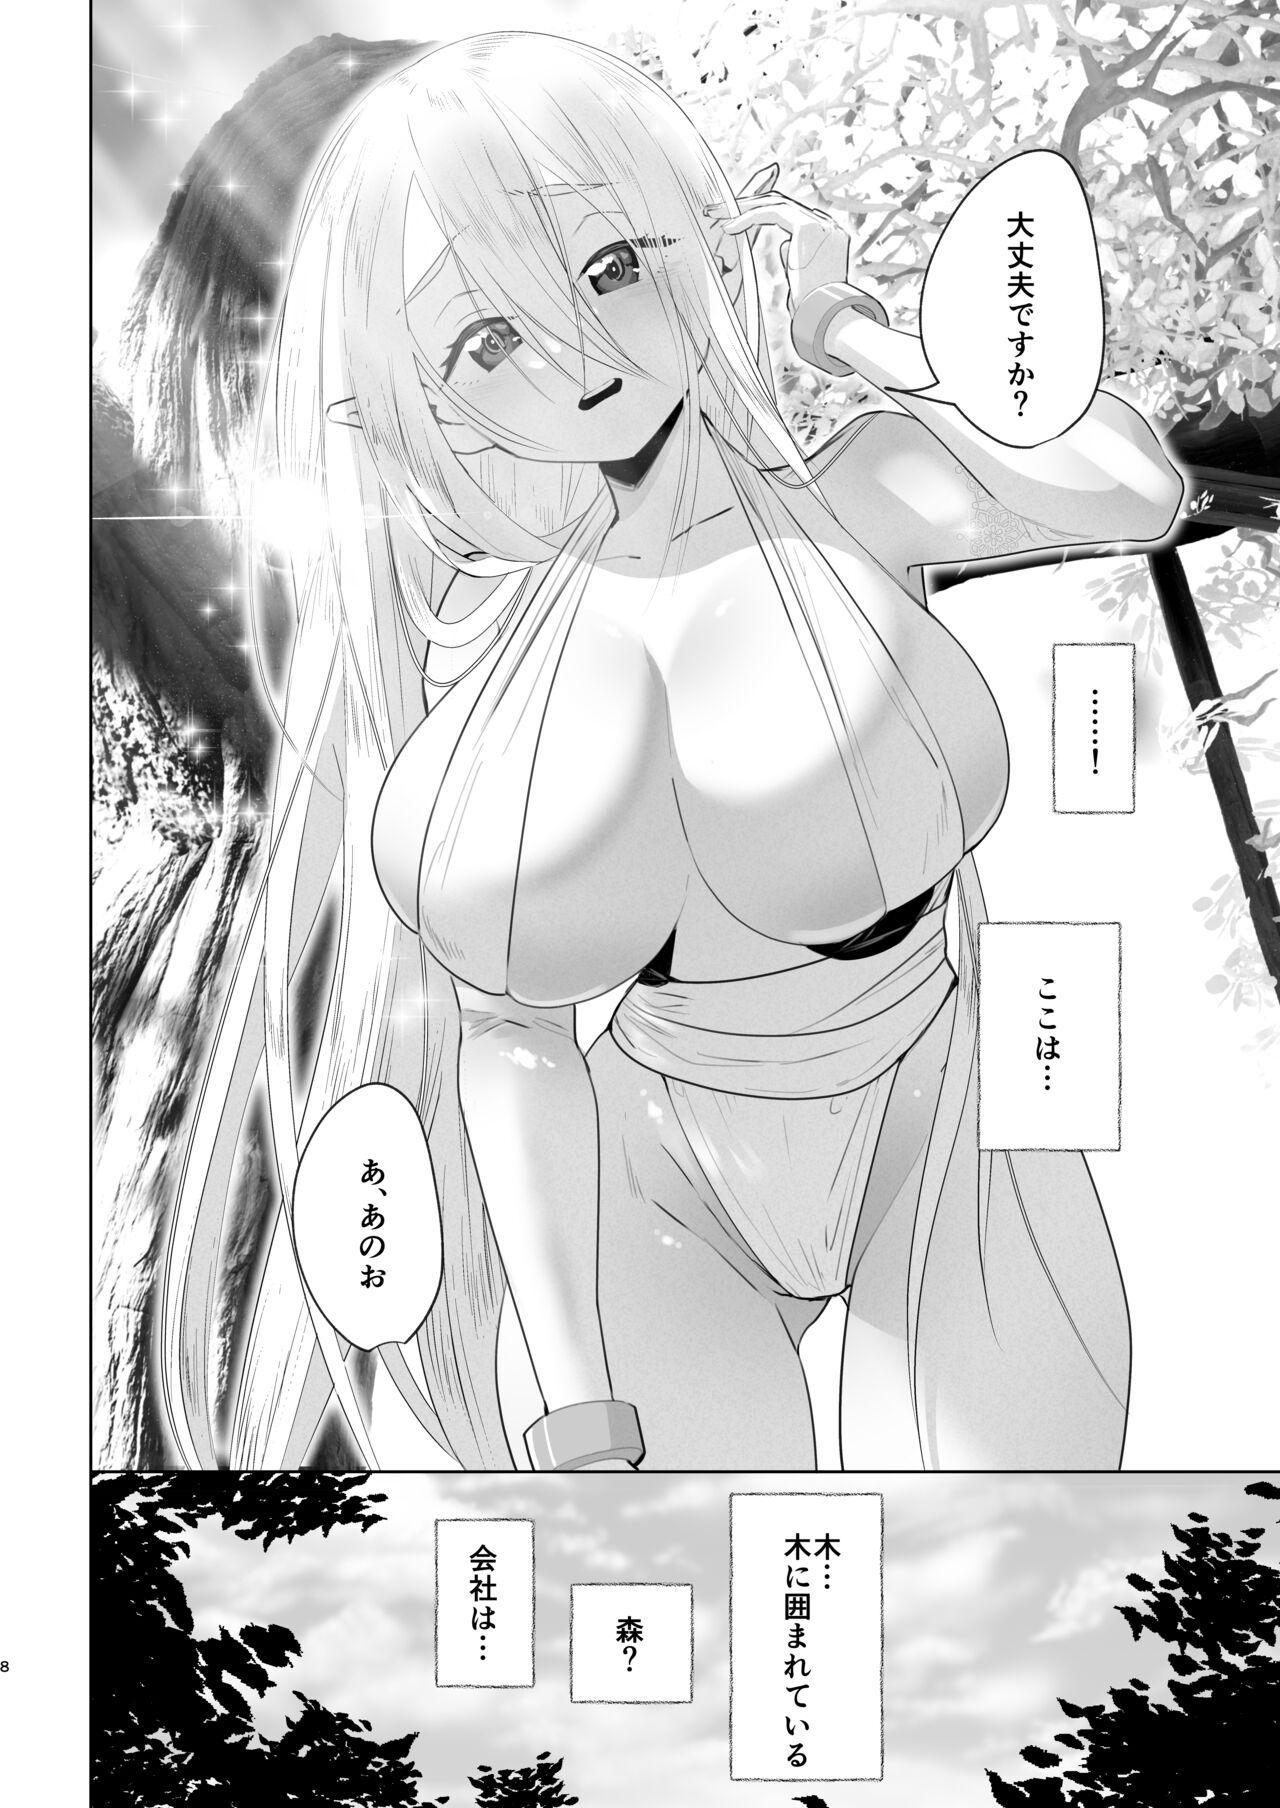 Busty Isekaitensei shitara bisyojo dattaken Amatuer - Page 7